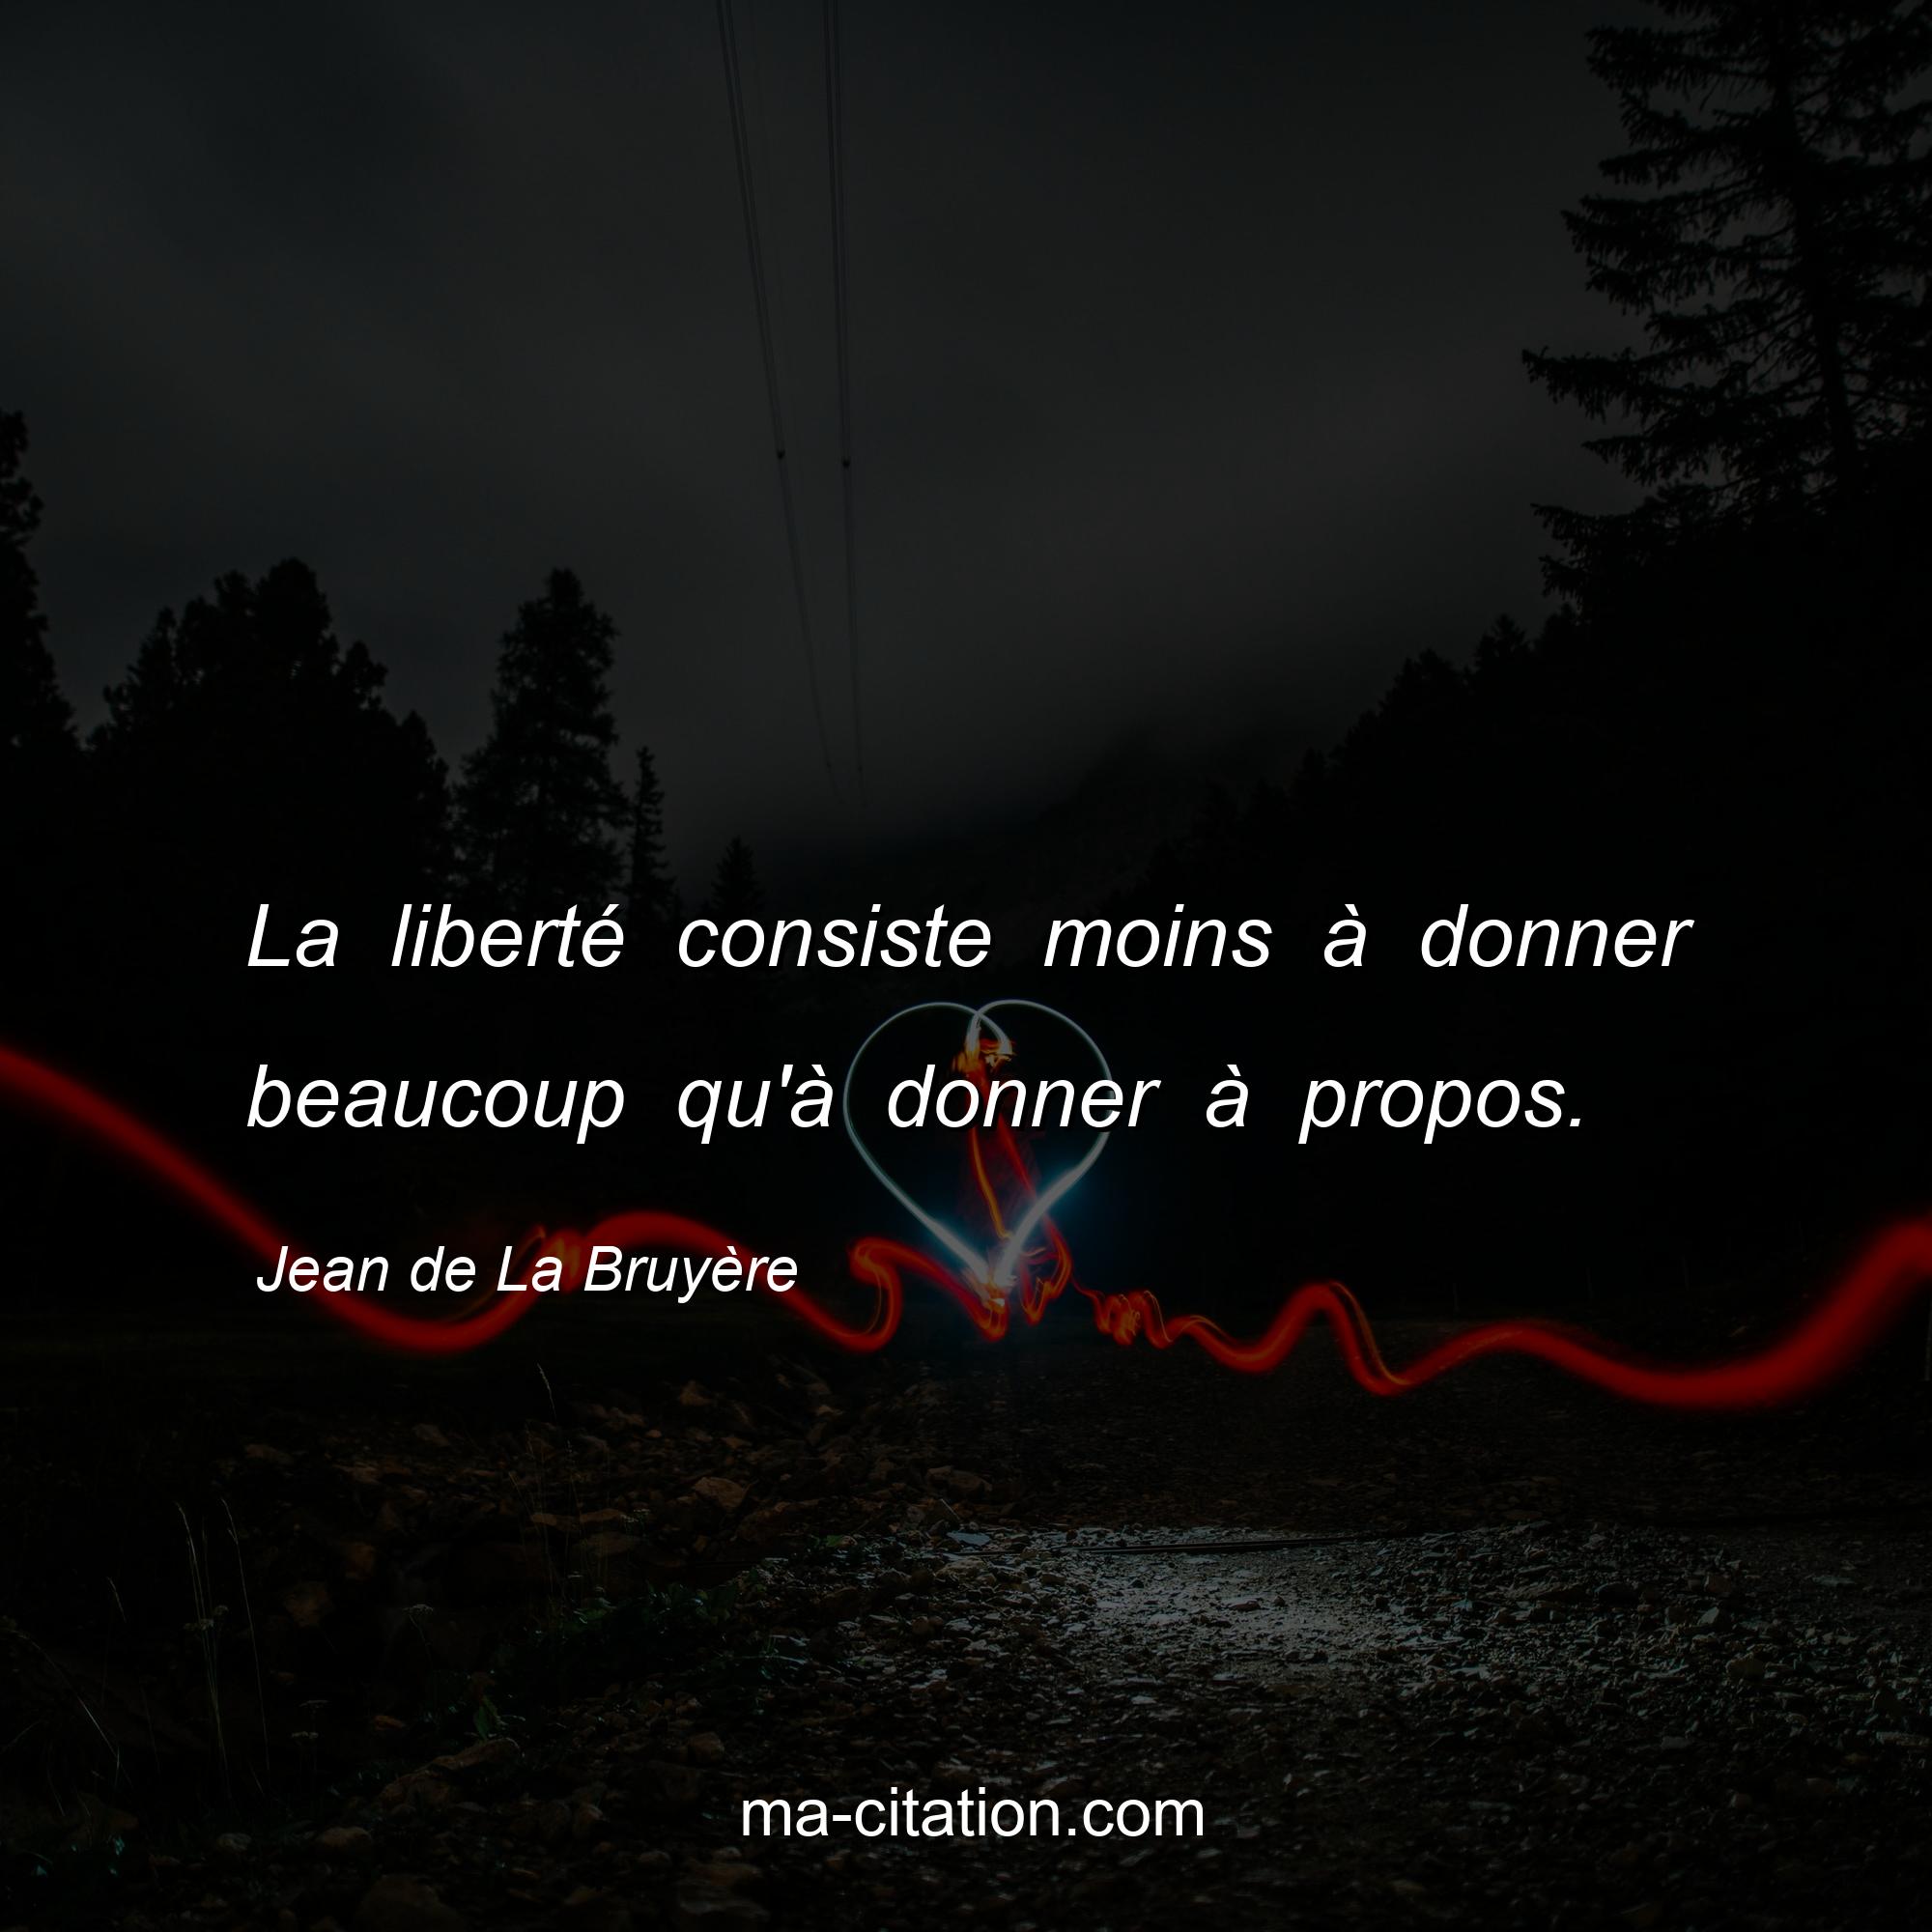 Jean de La Bruyère : La liberté consiste moins à donner beaucoup qu'à donner à propos.